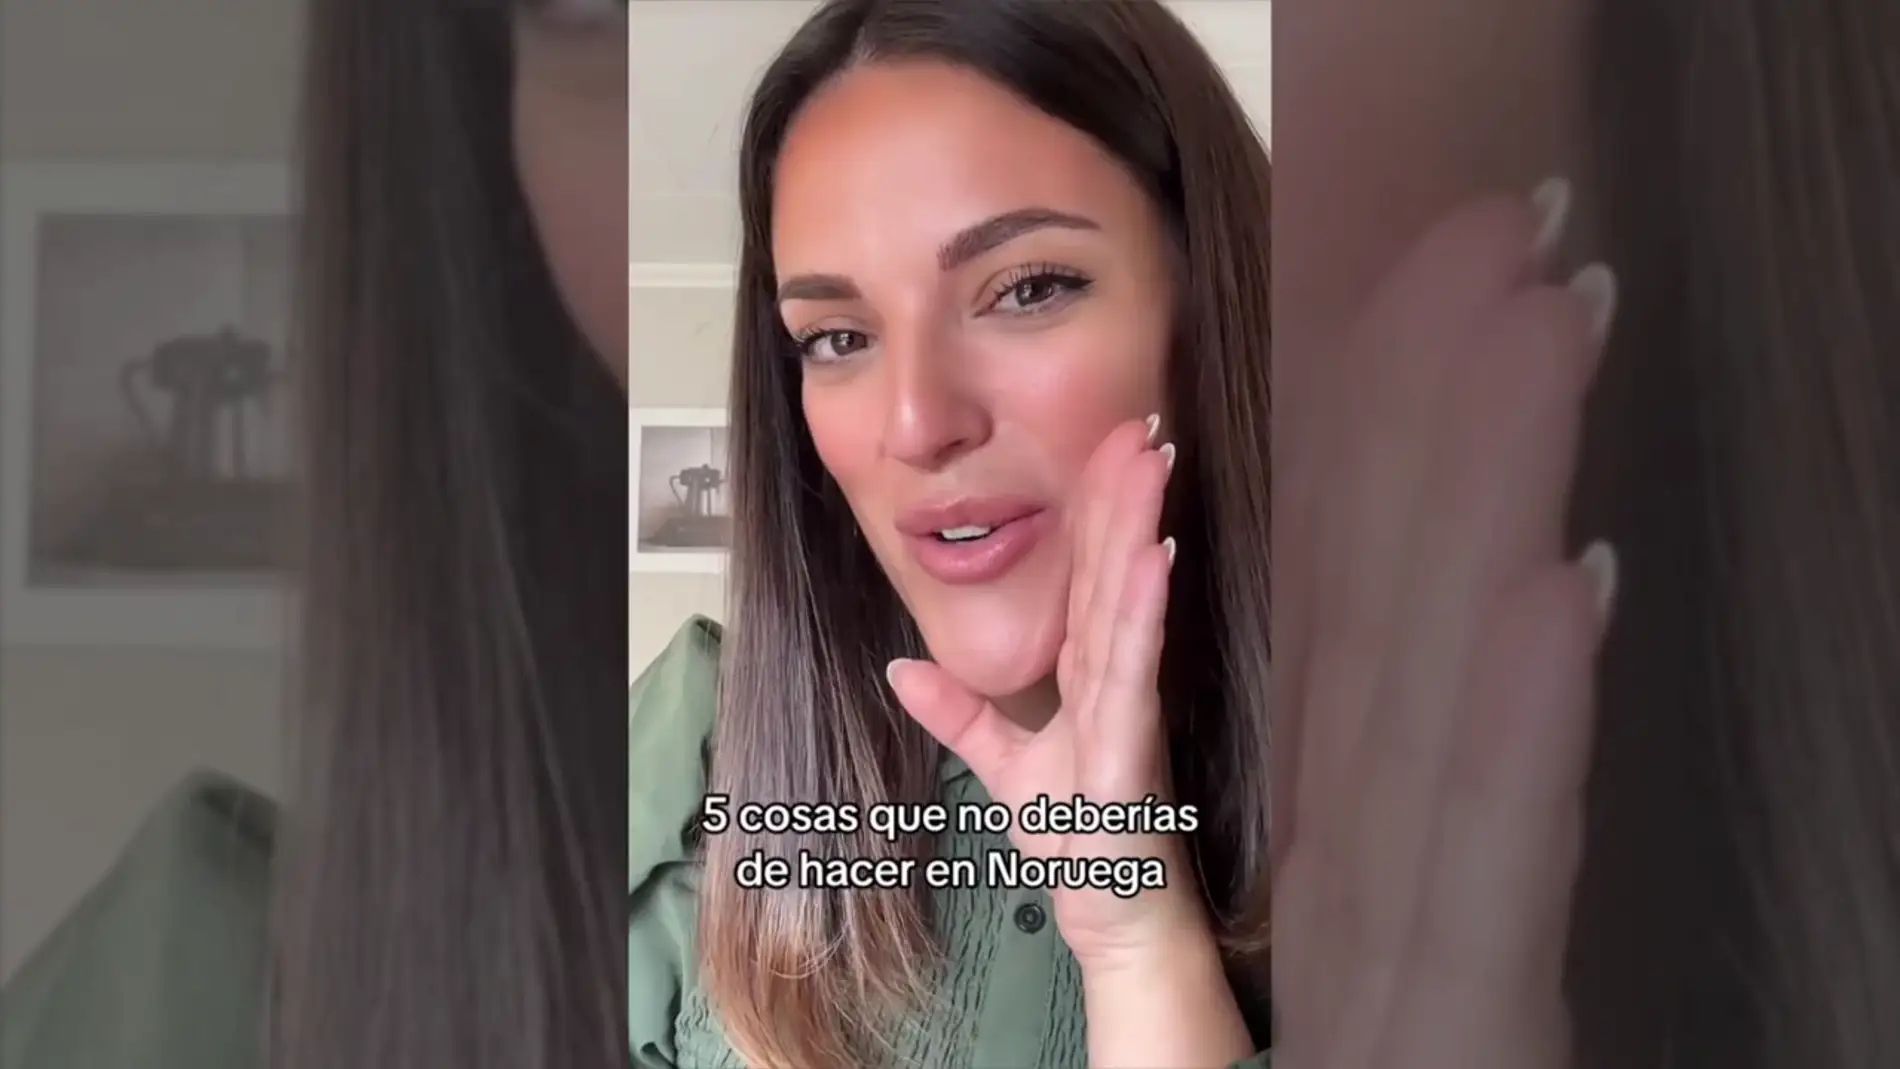 Una joven española cuenta las costumbres de nuestro país que los noruegos odian: "Les parece antihigiénico"